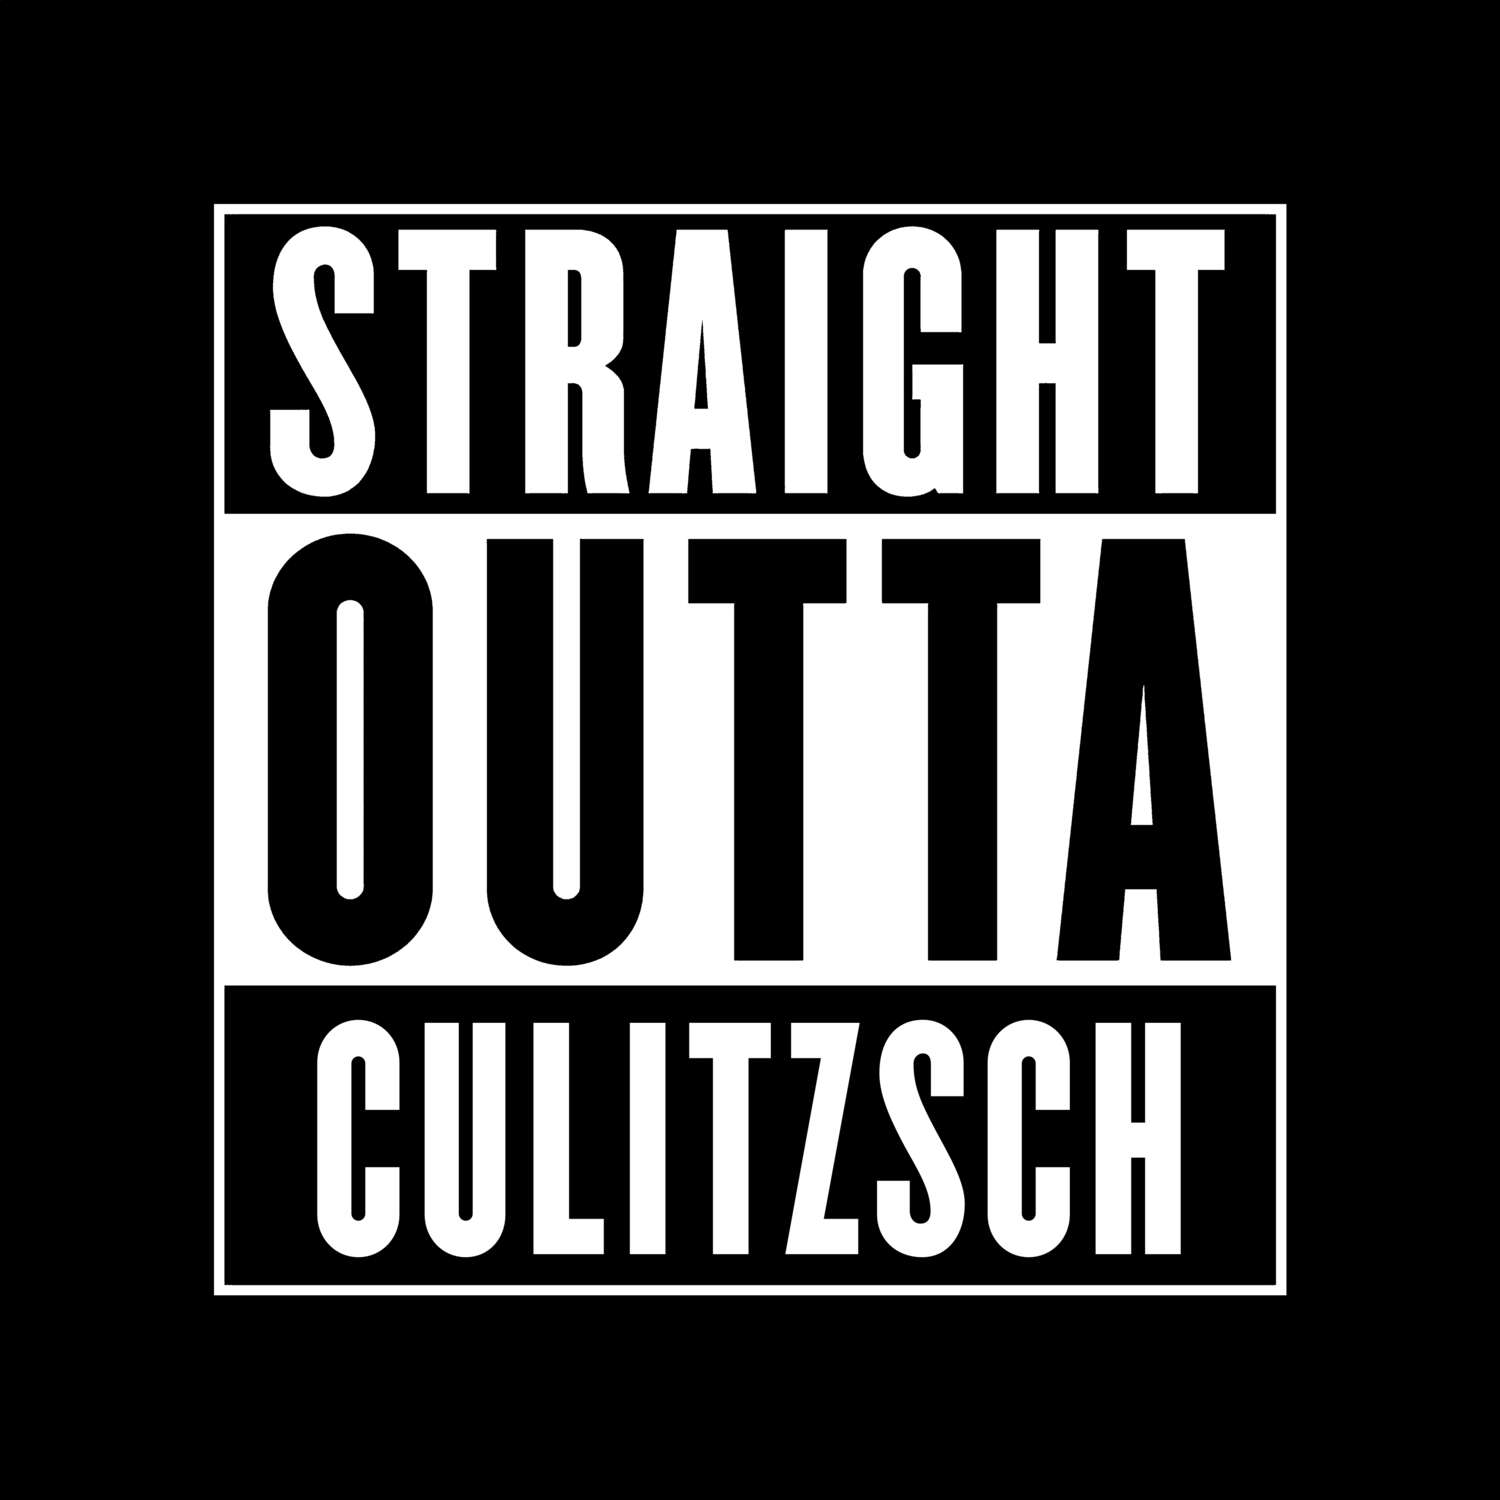 Culitzsch T-Shirt »Straight Outta«